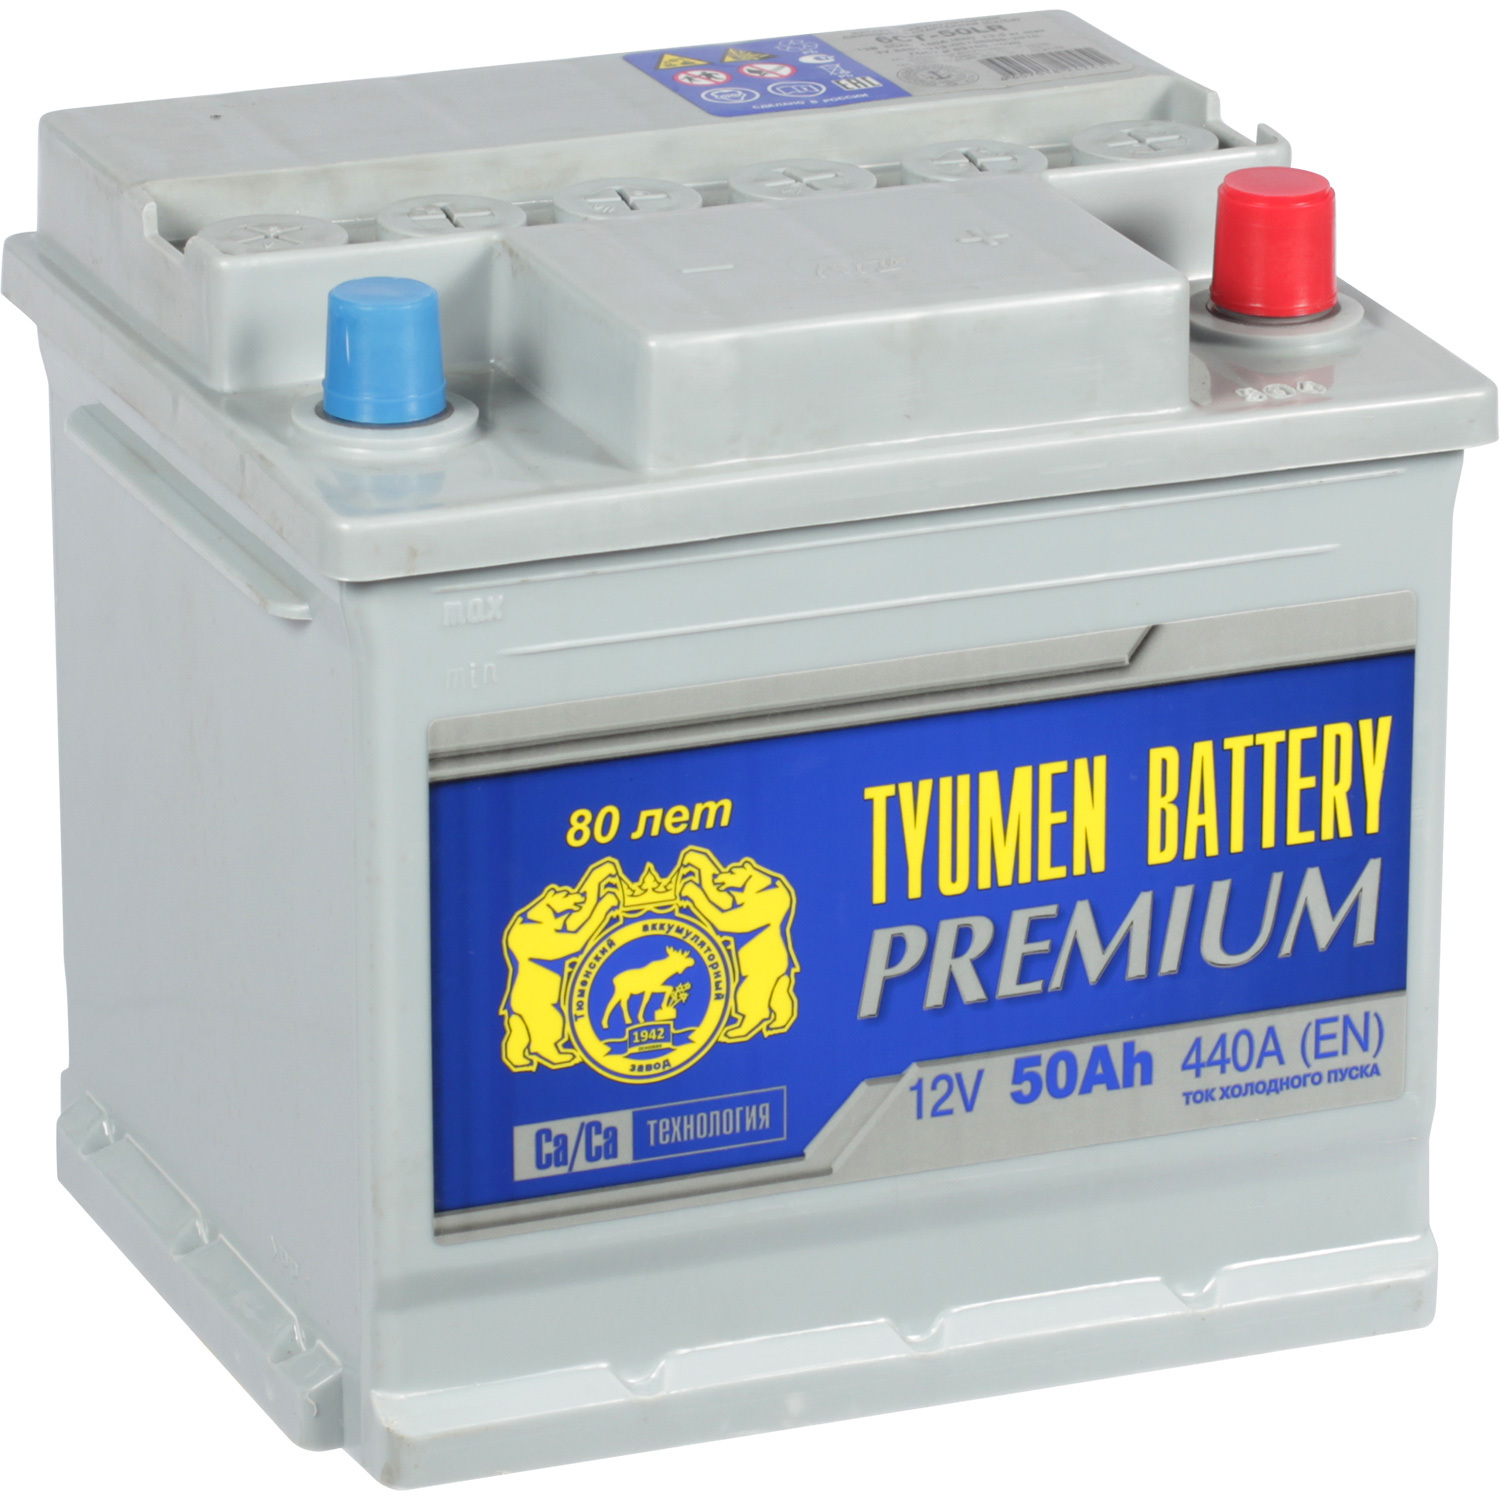 Tyumen Battery Автомобильный аккумулятор Tyumen Battery Premium 50 Ач обратная полярность L1 tyumen battery автомобильный аккумулятор tyumen battery premium 50 ач обратная полярность l1